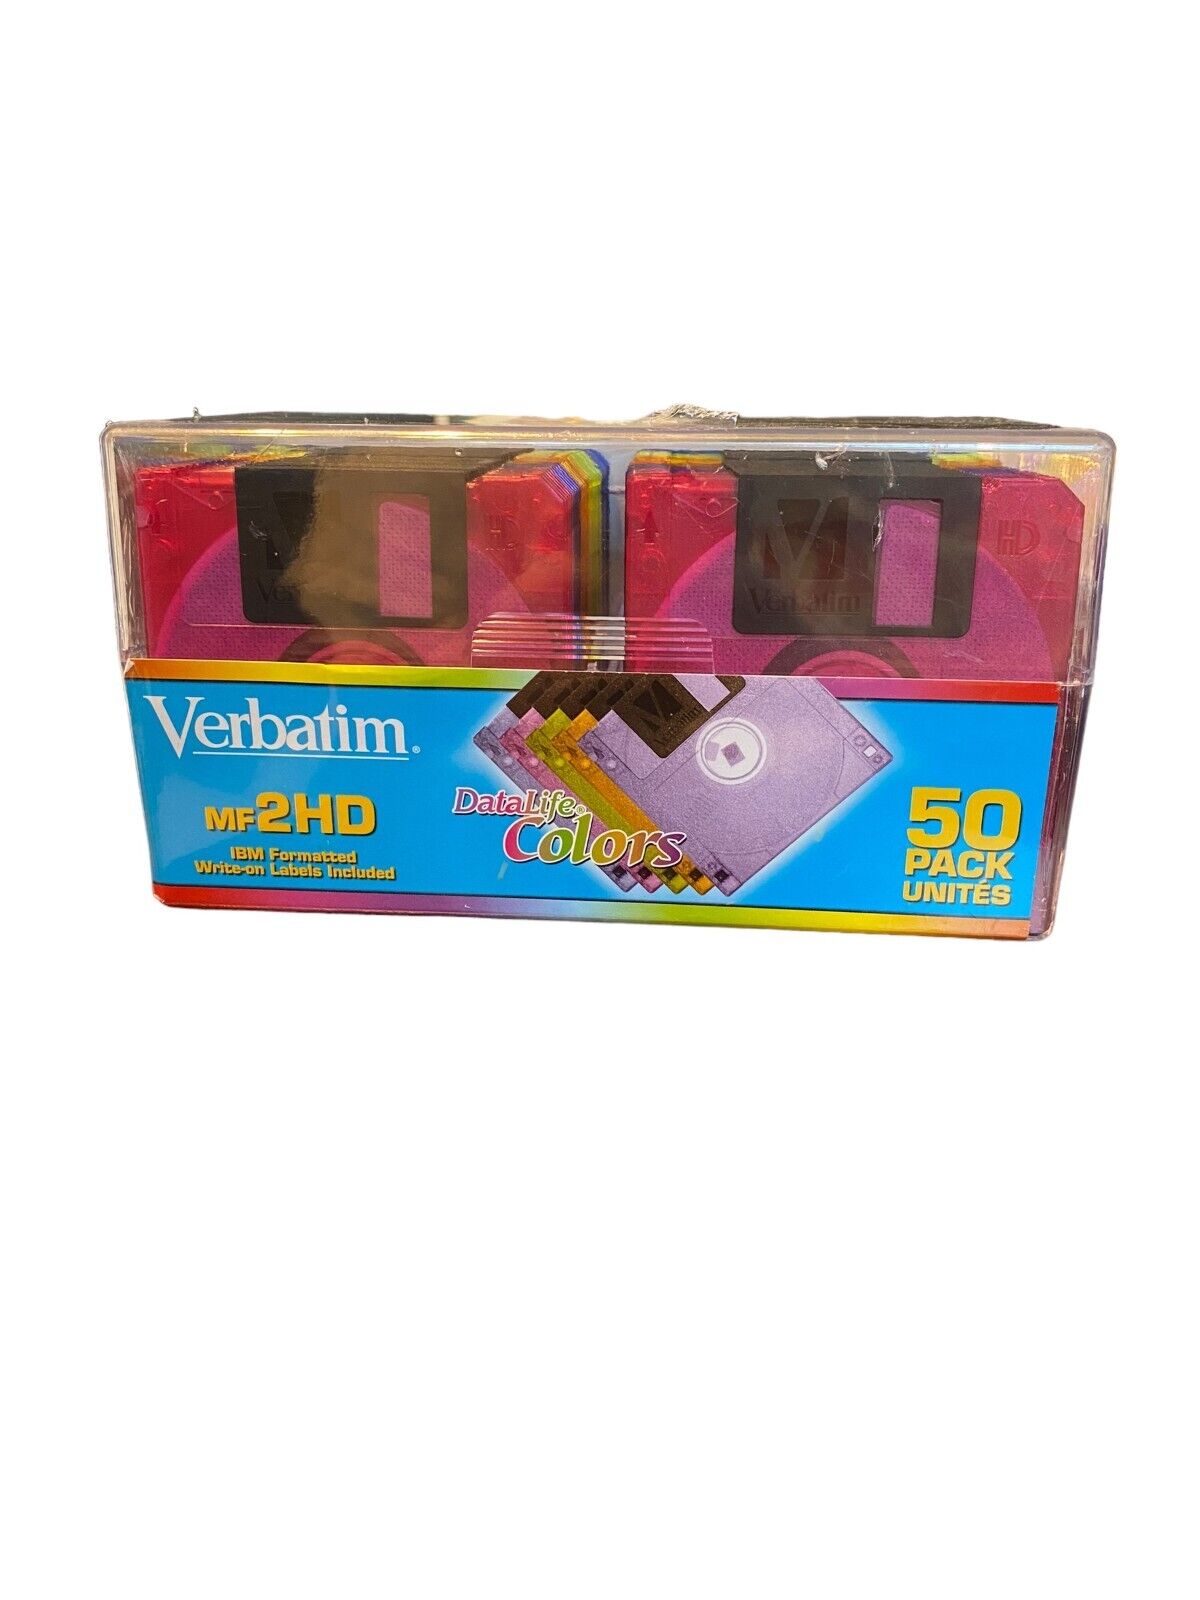 Verbatim DataLife Colors 50 Pack